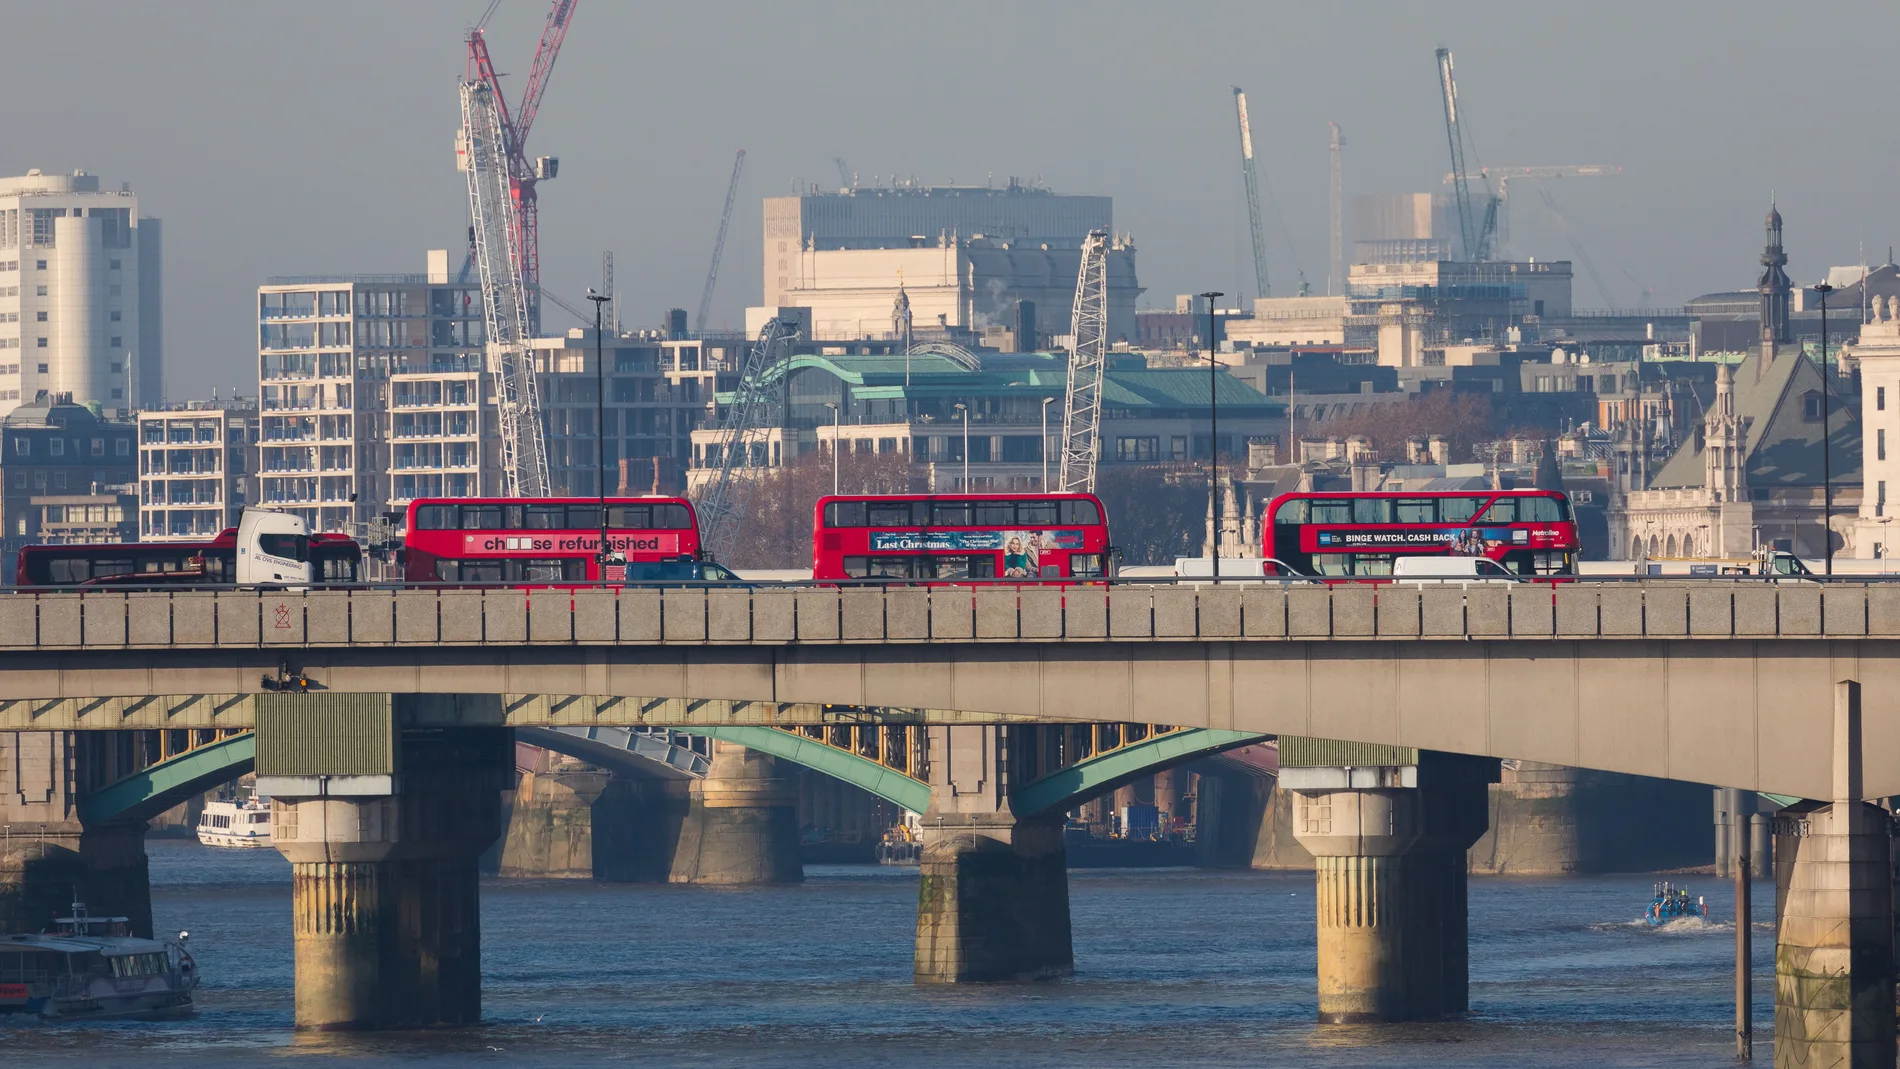 Puente de Londres donde tuvo lugar el atentado terrorista